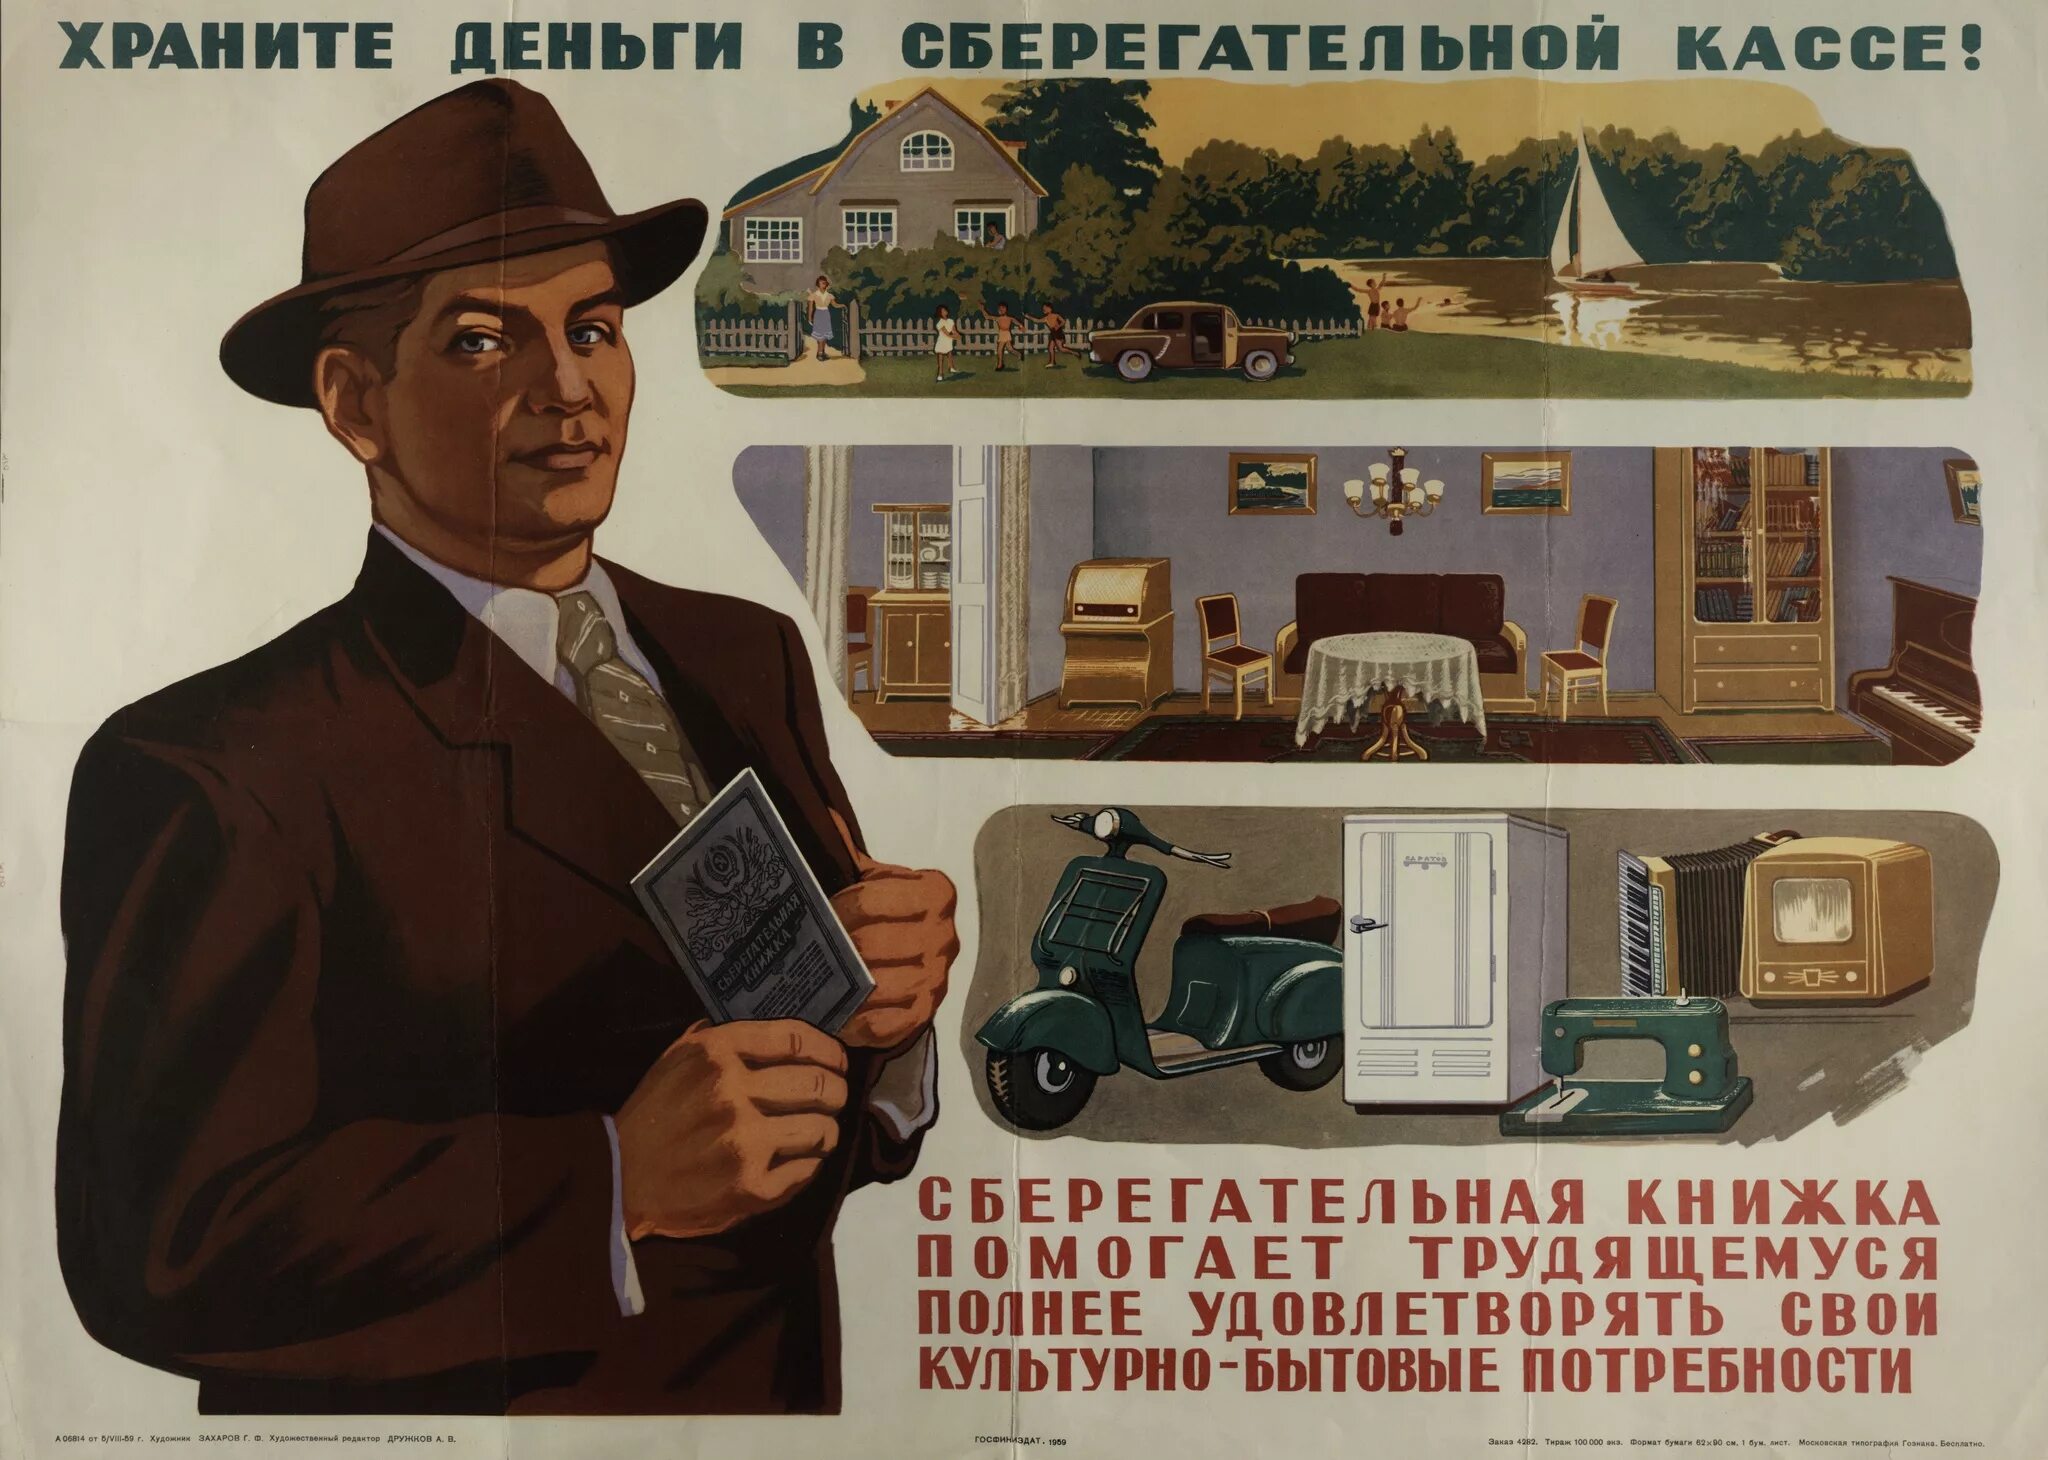 Сберкасса плакат СССР. Храните деньги в сберегательной кассе плакат. Советские плакаты про деньги. Храните деньги в сберегательной кассе. Реклама банков 90 х